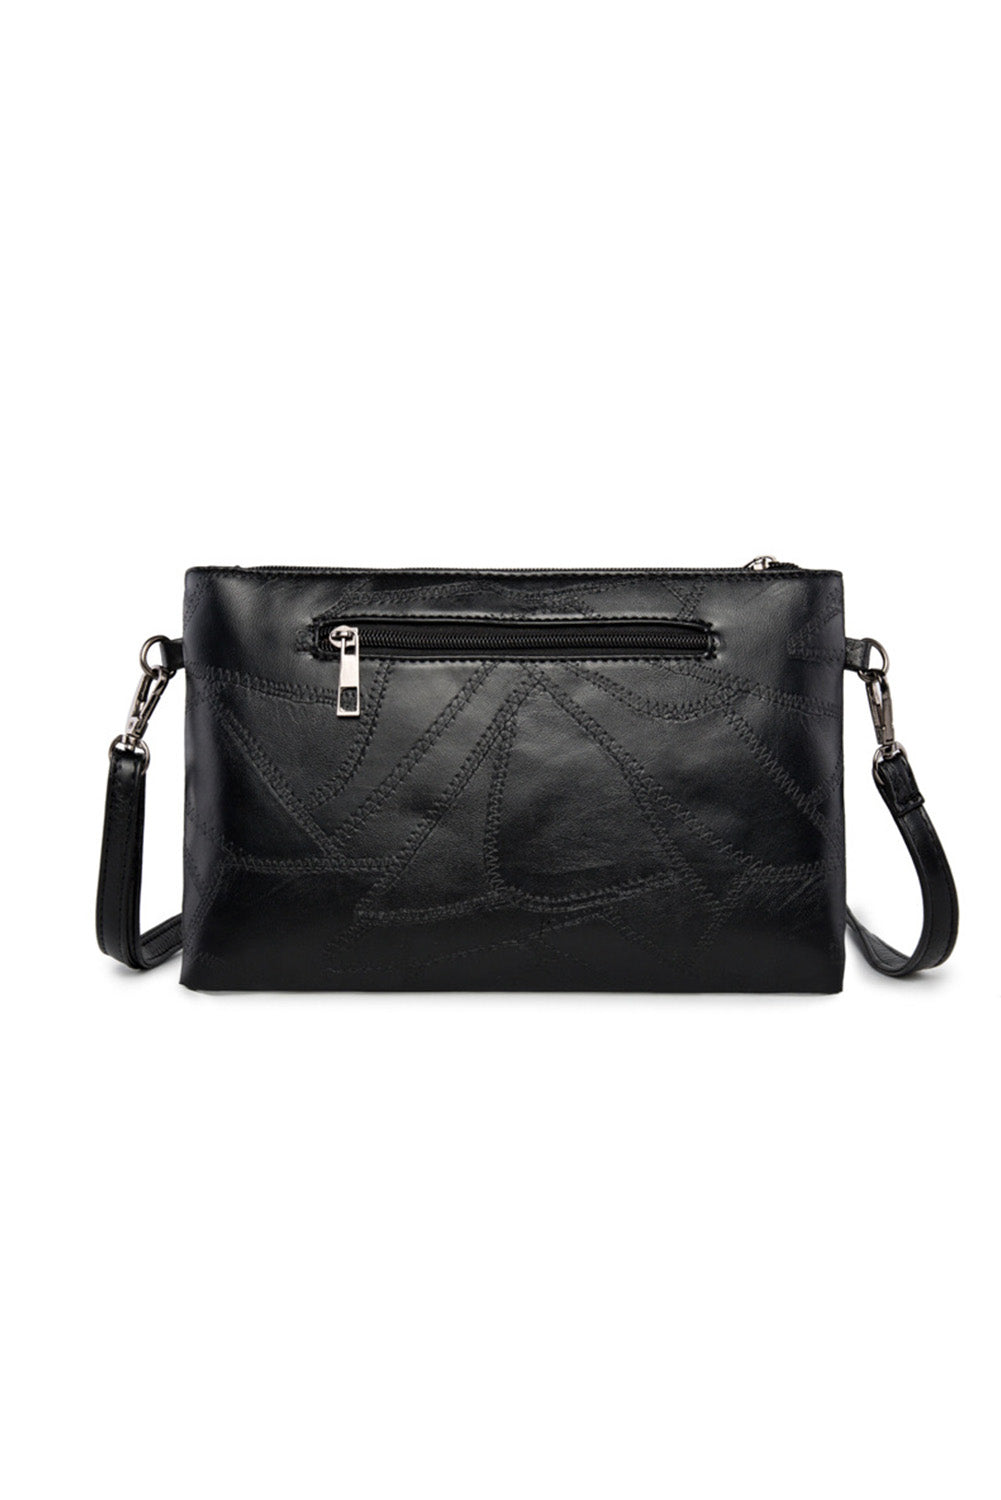 Black Riveted PU Leather Zipper Clutch Bag